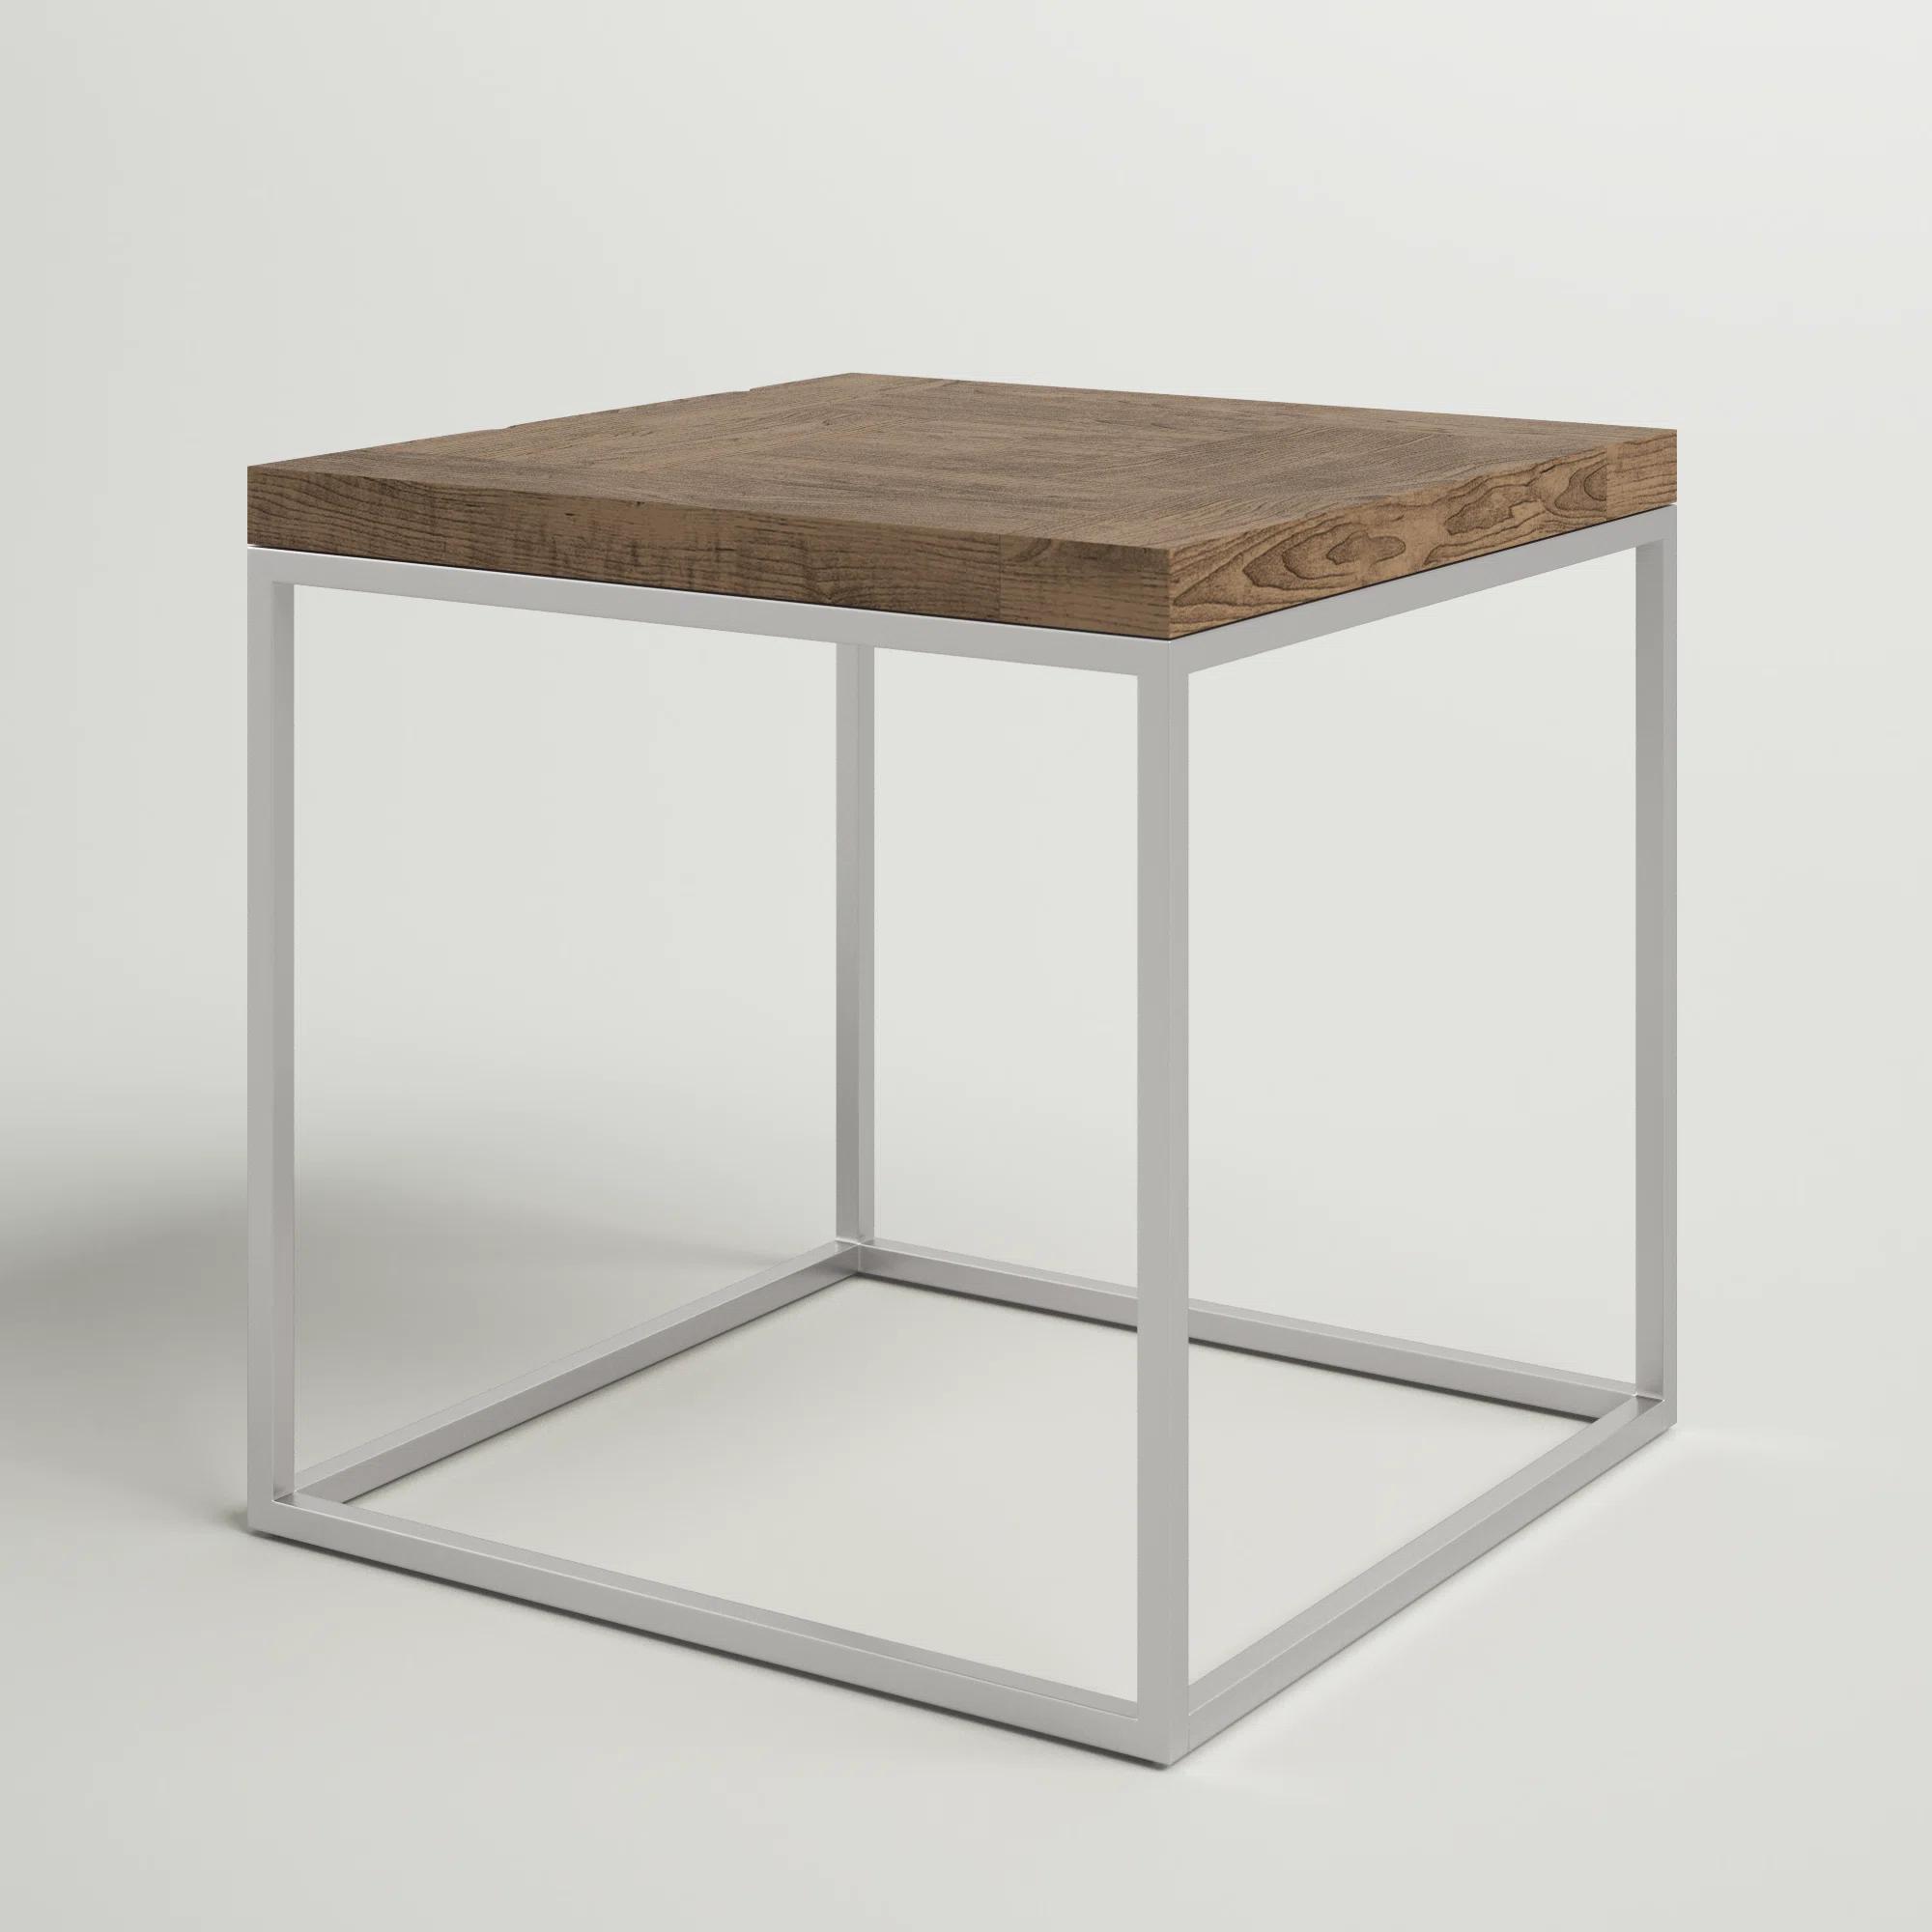 

    
6JC221-3pcs Light Beige Wood Coffee Table + End Table by Modus Ace 6JC221-3pcs
